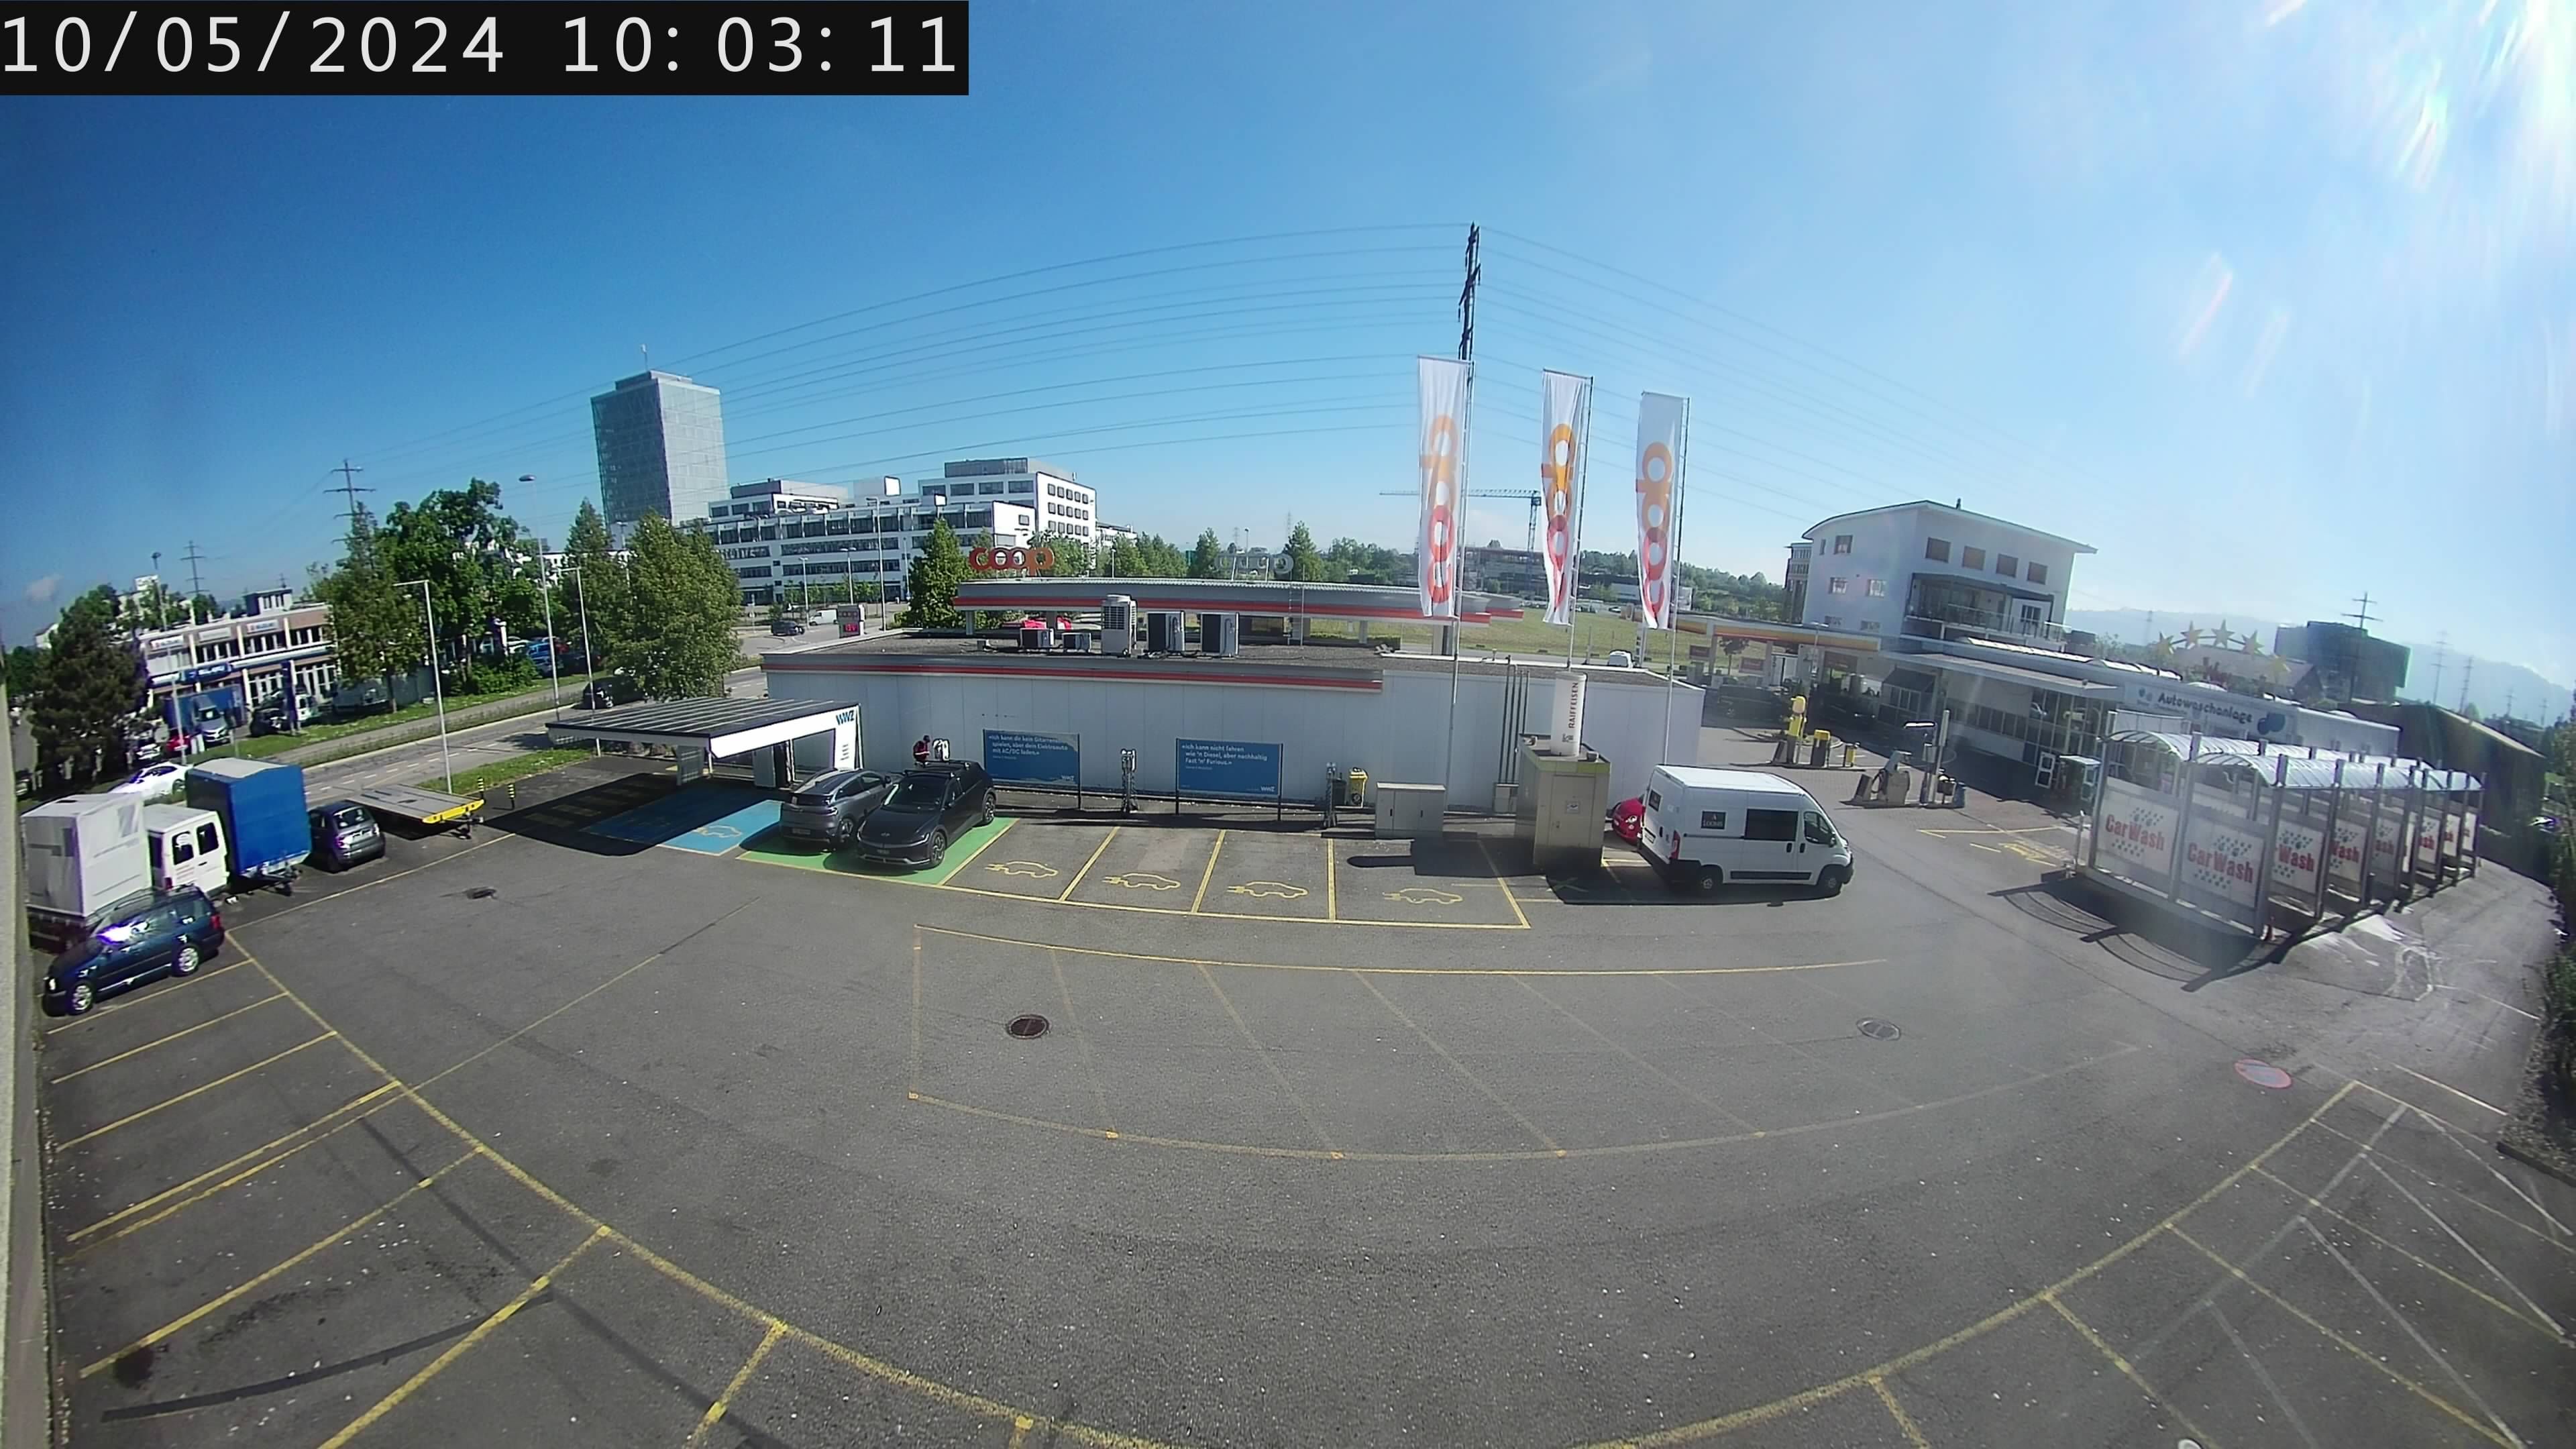 Risch-Rotkreuz: Webcam Rotkreuz Kreisel Coop Tankstelle